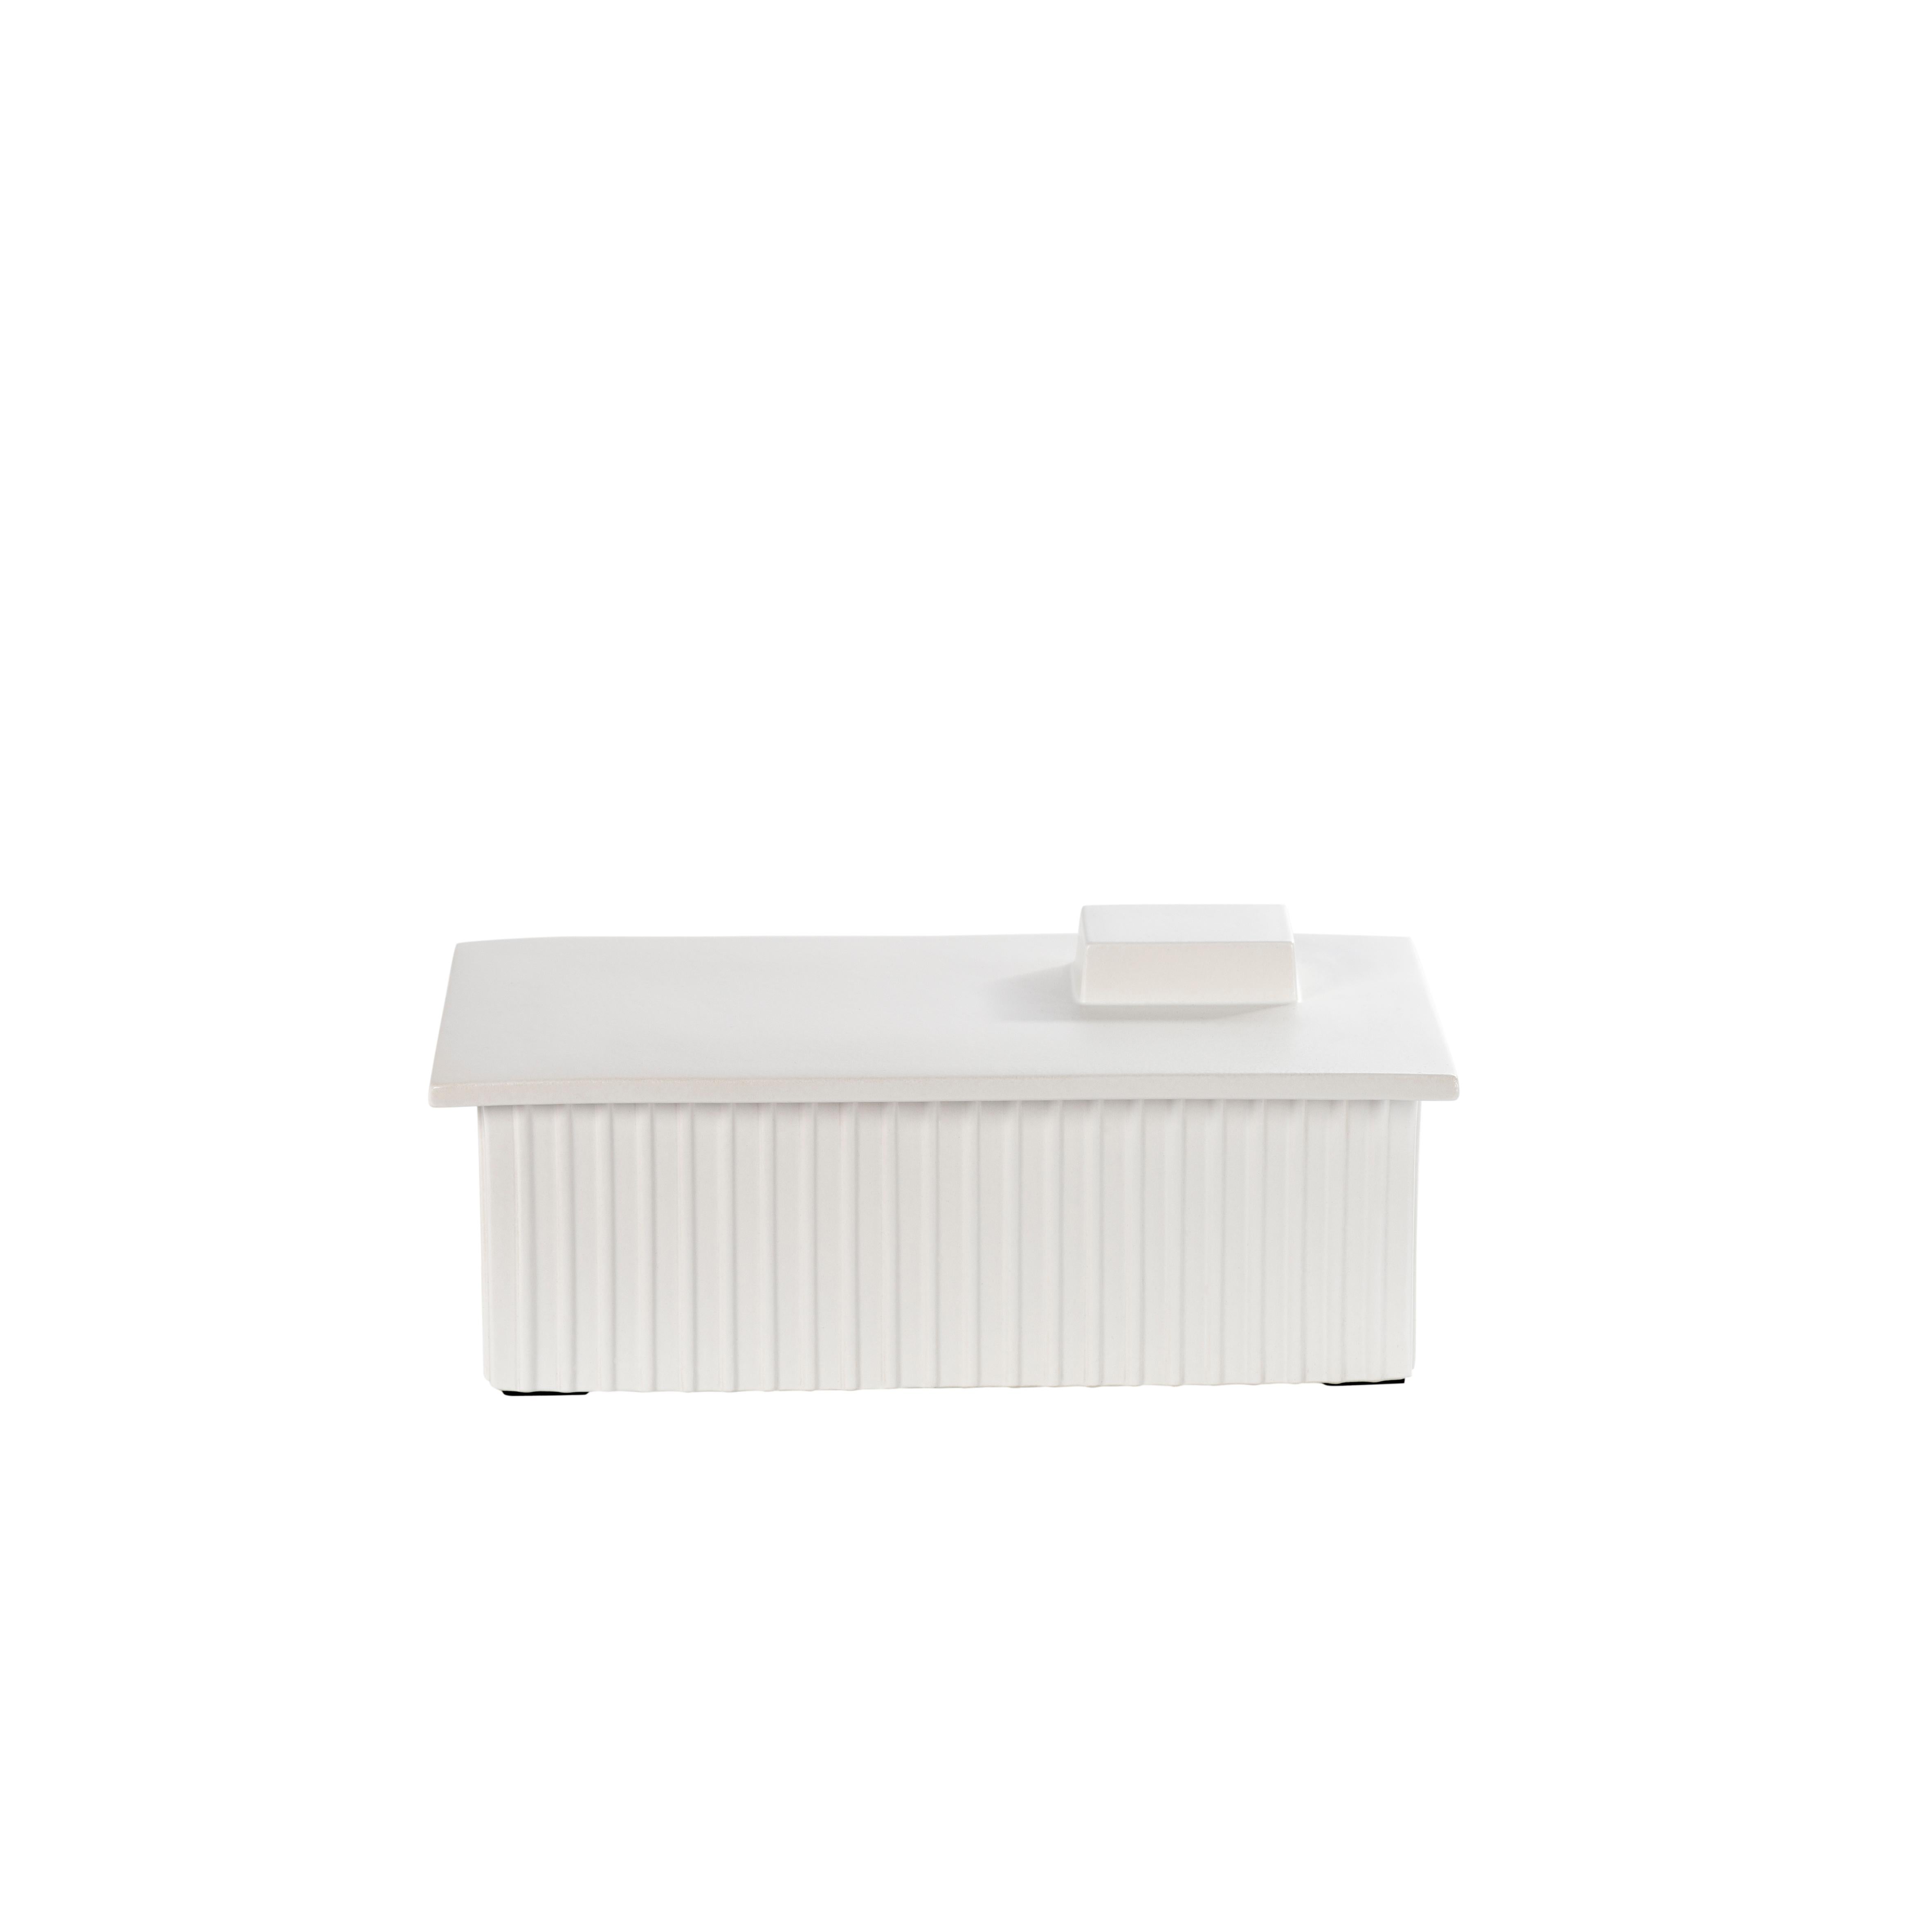 Bau einer großen weißen Box von Pulpo
Abmessungen: T32,5 x B17 x H13 cm
MATERIALIEN: Keramik

Auch in verschiedenen Farben erhältlich. 

Diese Baukästen erinnern an die in unseren Stadtlandschaften so bekannten Industriegebiete. Eine industrielle